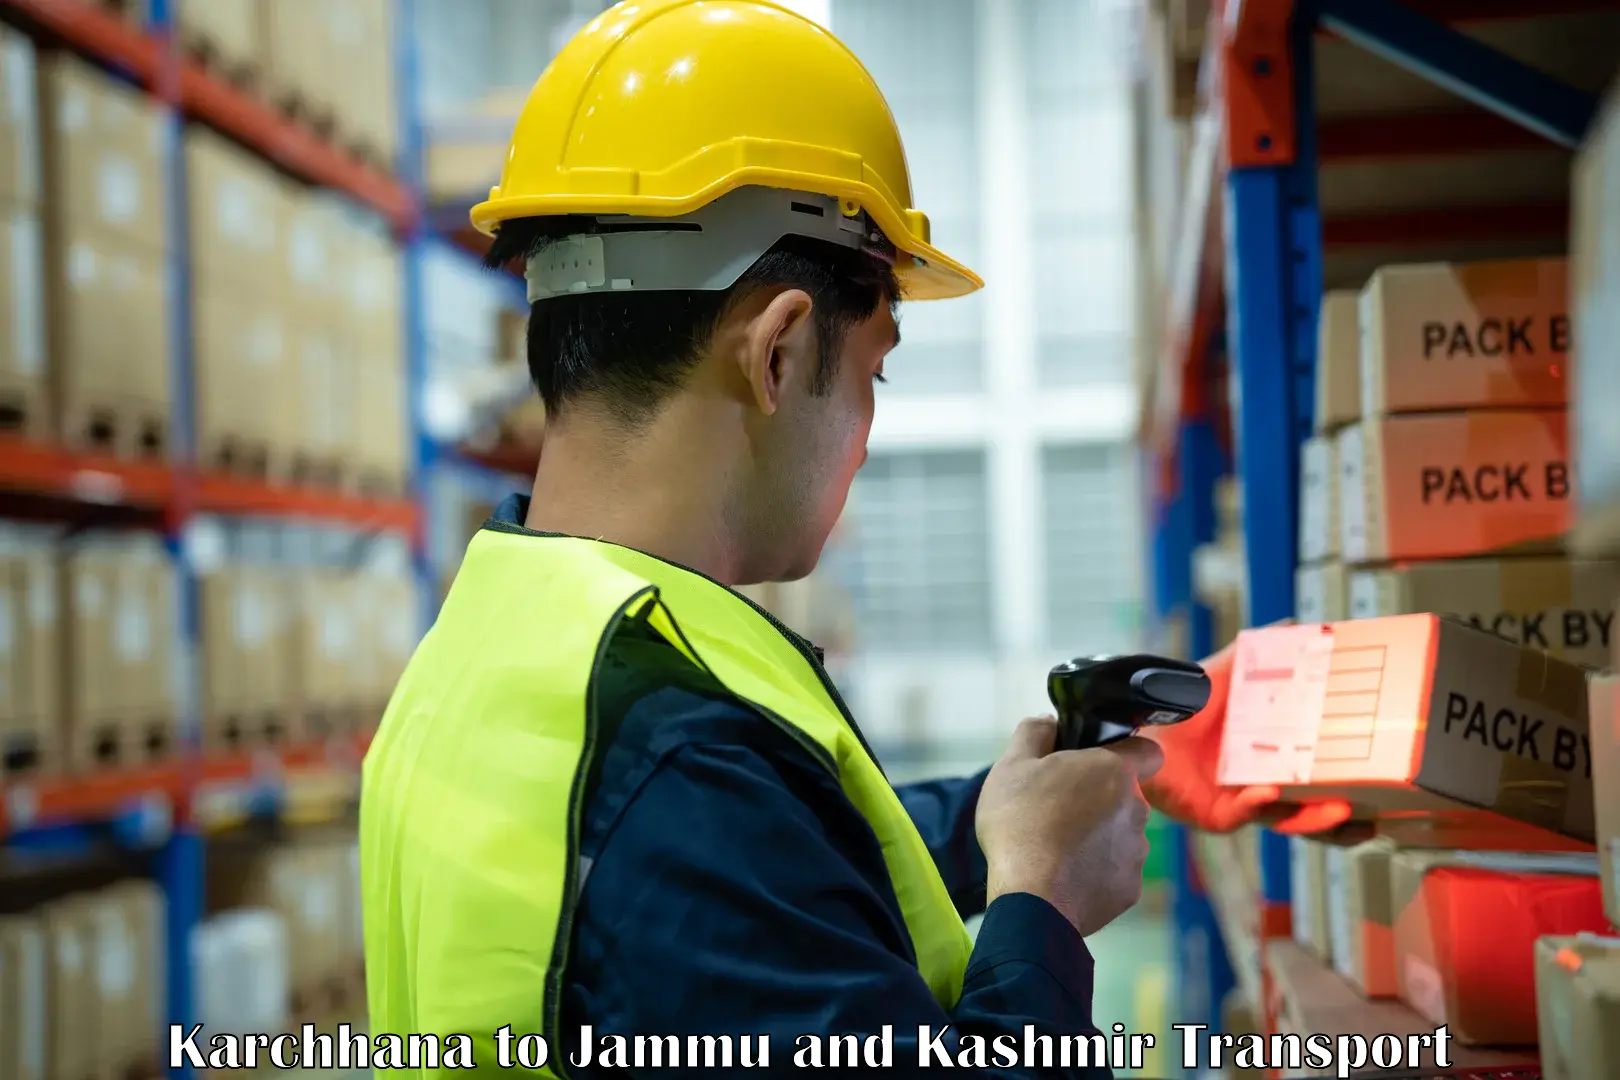 Cargo transportation services Karchhana to Jammu and Kashmir